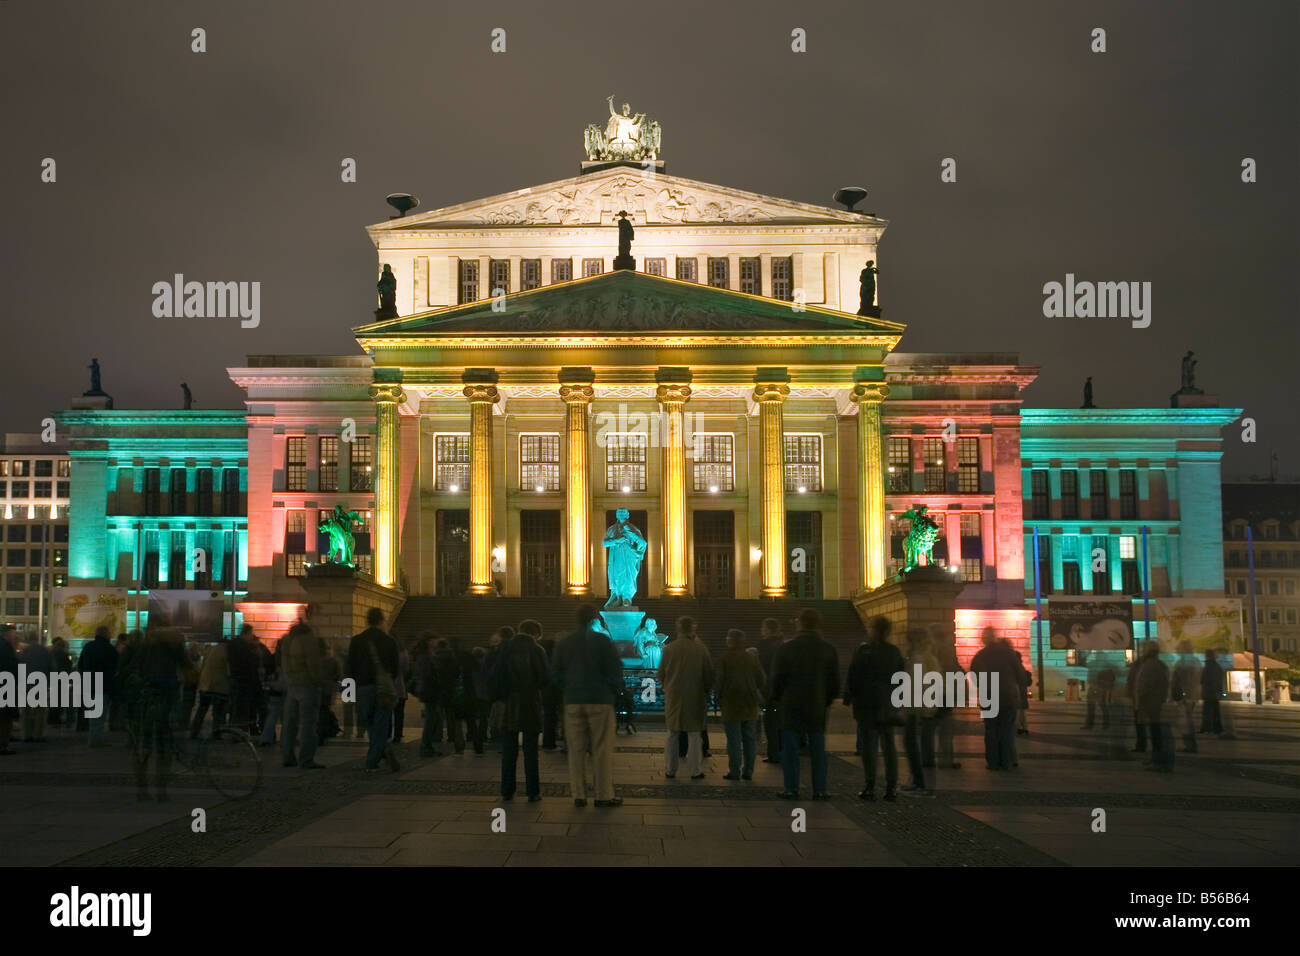 Konzerthaus, Gendarmenmarkt, Berlin, Germany, Festival of Lights Stock Photo